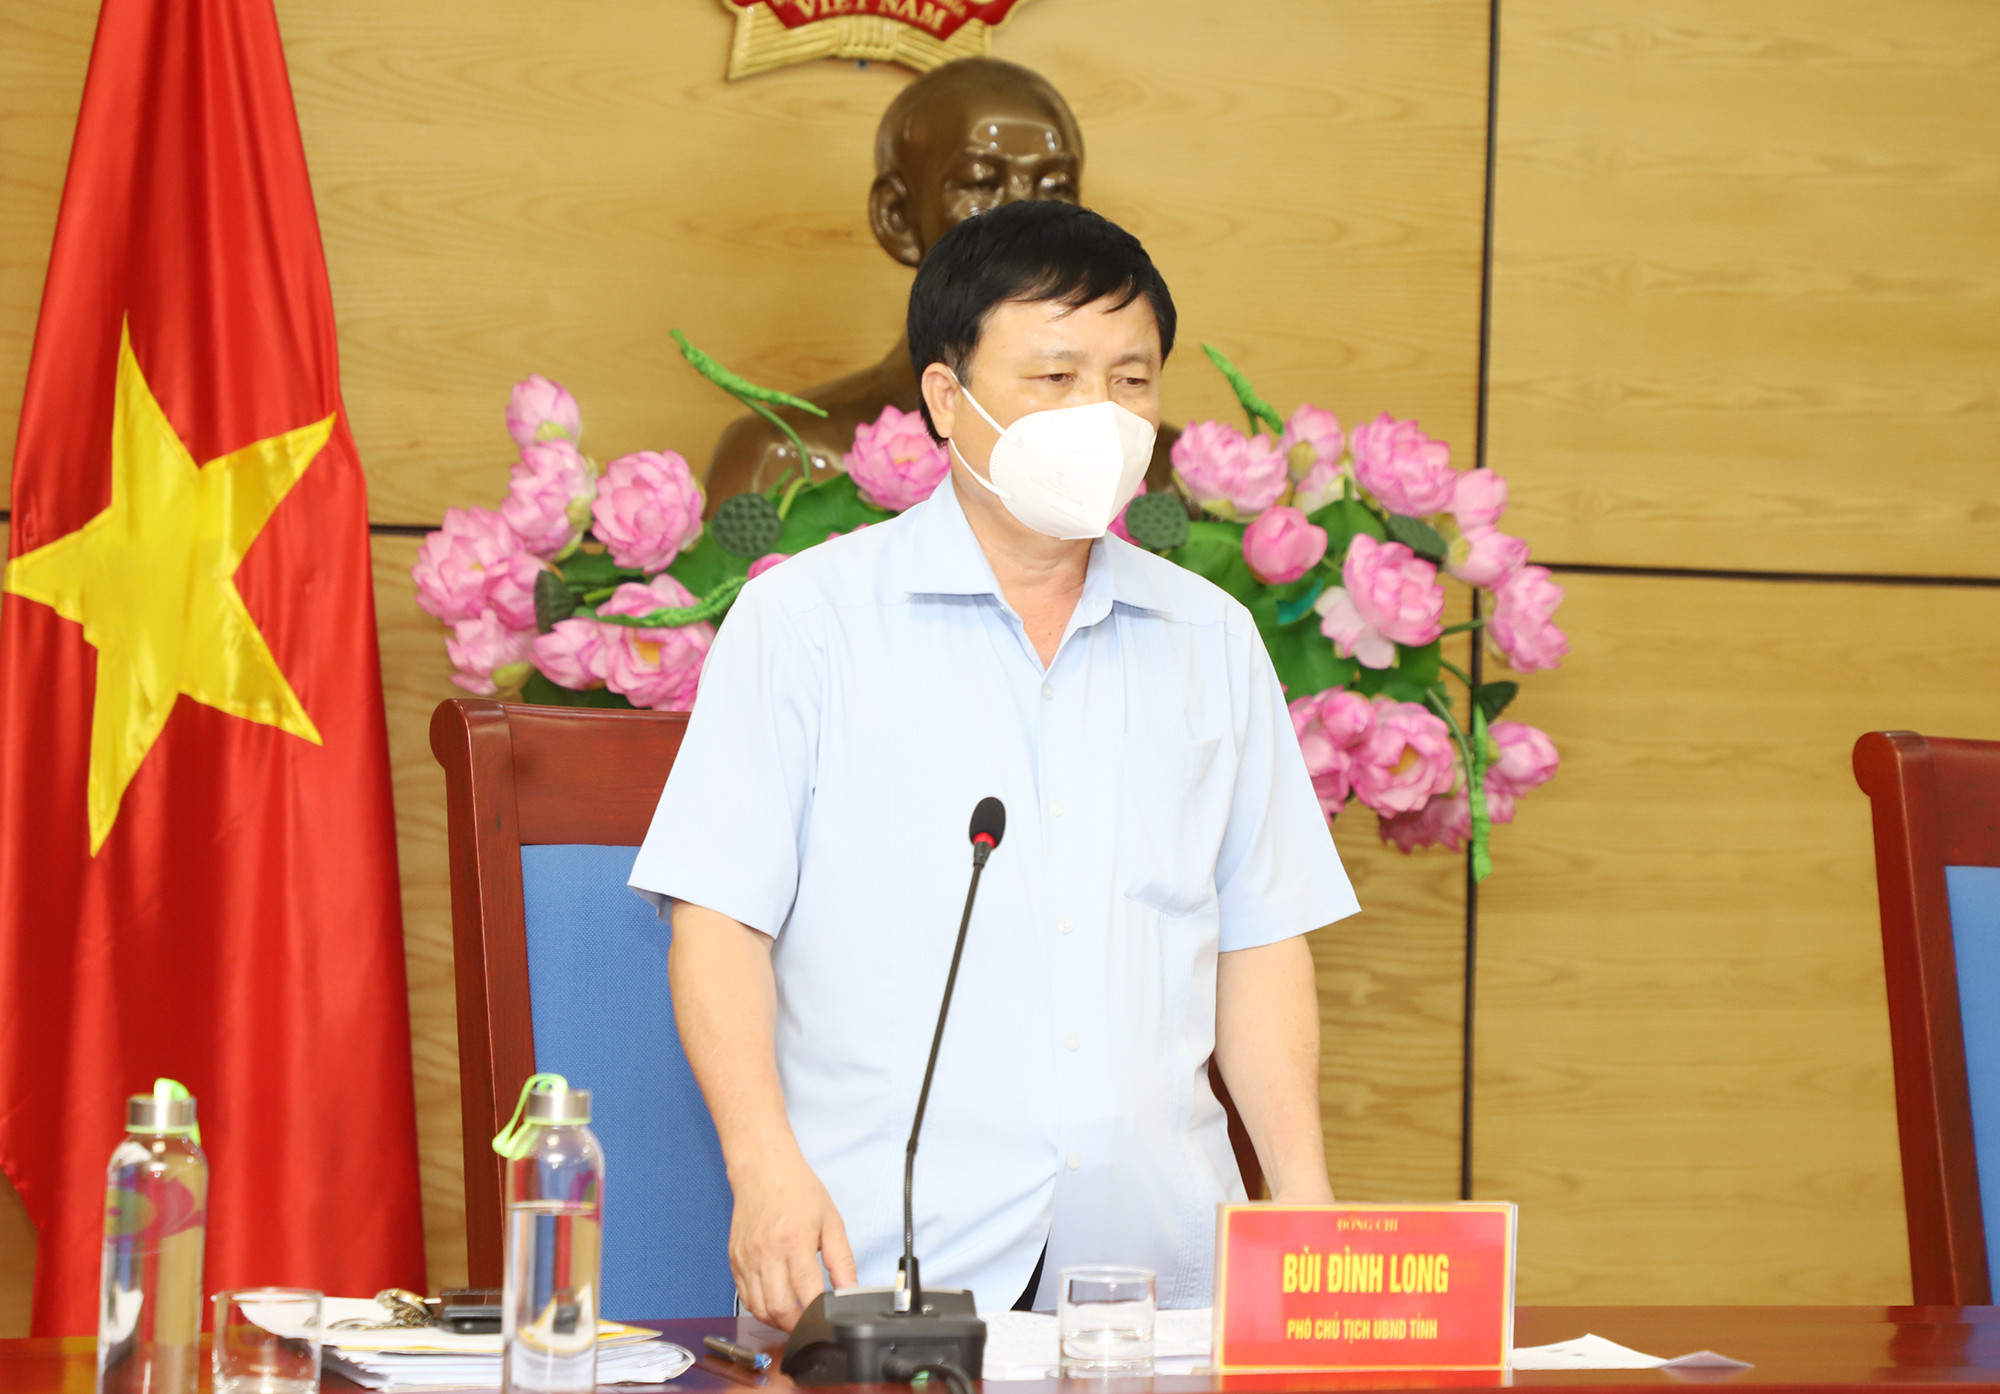 Phó Chủ tịch UBND tỉnh Bùi Đình Long phát biểu tại cuộc họp. Ảnh: Phạm Bằng